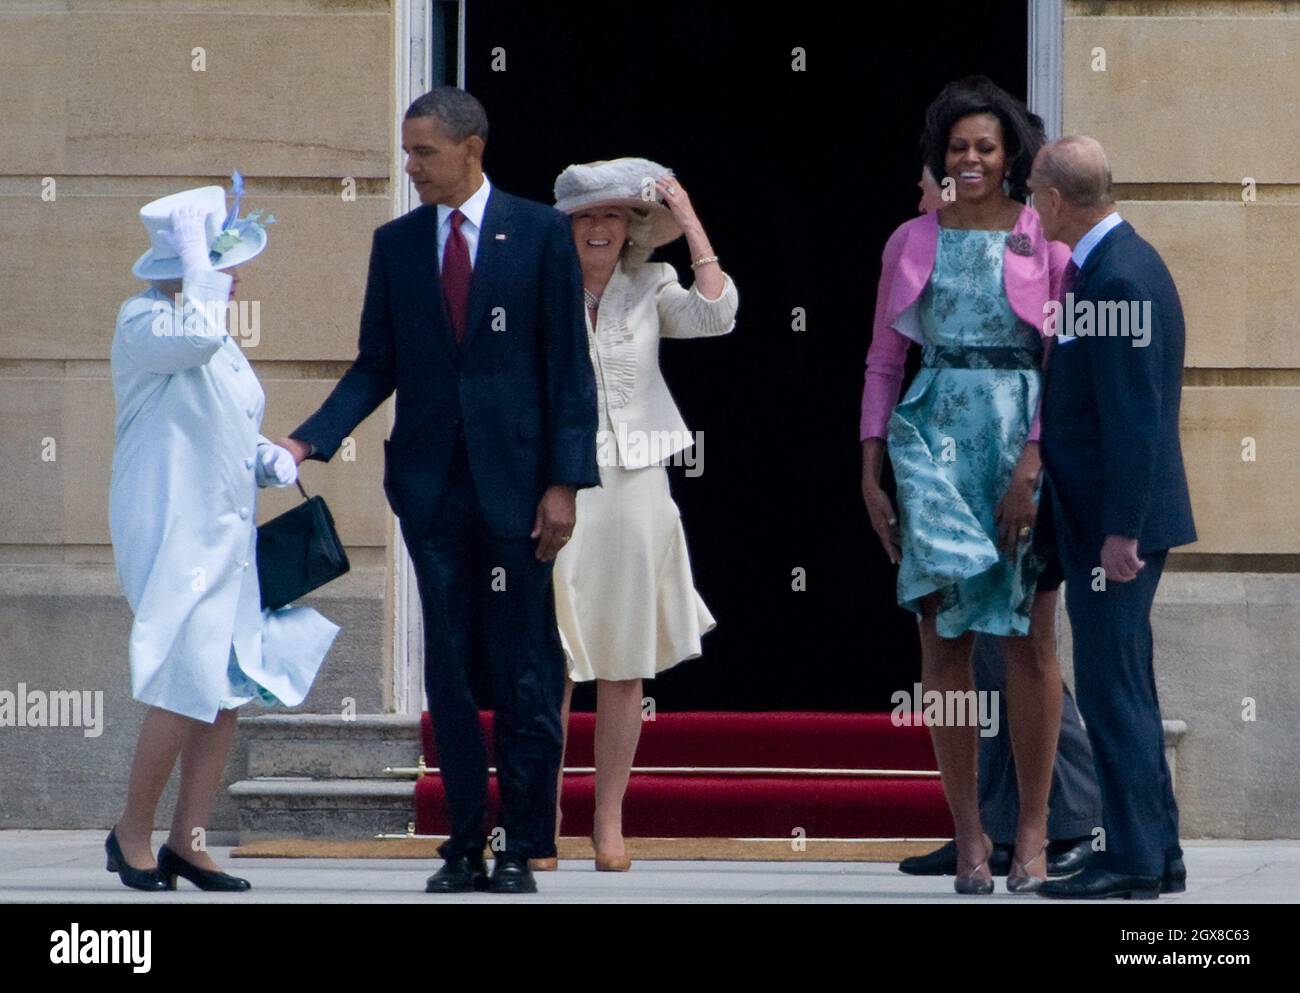 La reine Elizabeth II, le président américain Barack Obama, Camilla, la duchesse de Cornwall, le prince Charles, le prince de Galles,La première dame Michelle Obama et le prince Philip, duc d'Édimbourg, regardent un accueil de cérémonie dans les jardins de Buckingham Palace le 24 mai 2011 à Londres, en Angleterre. Banque D'Images